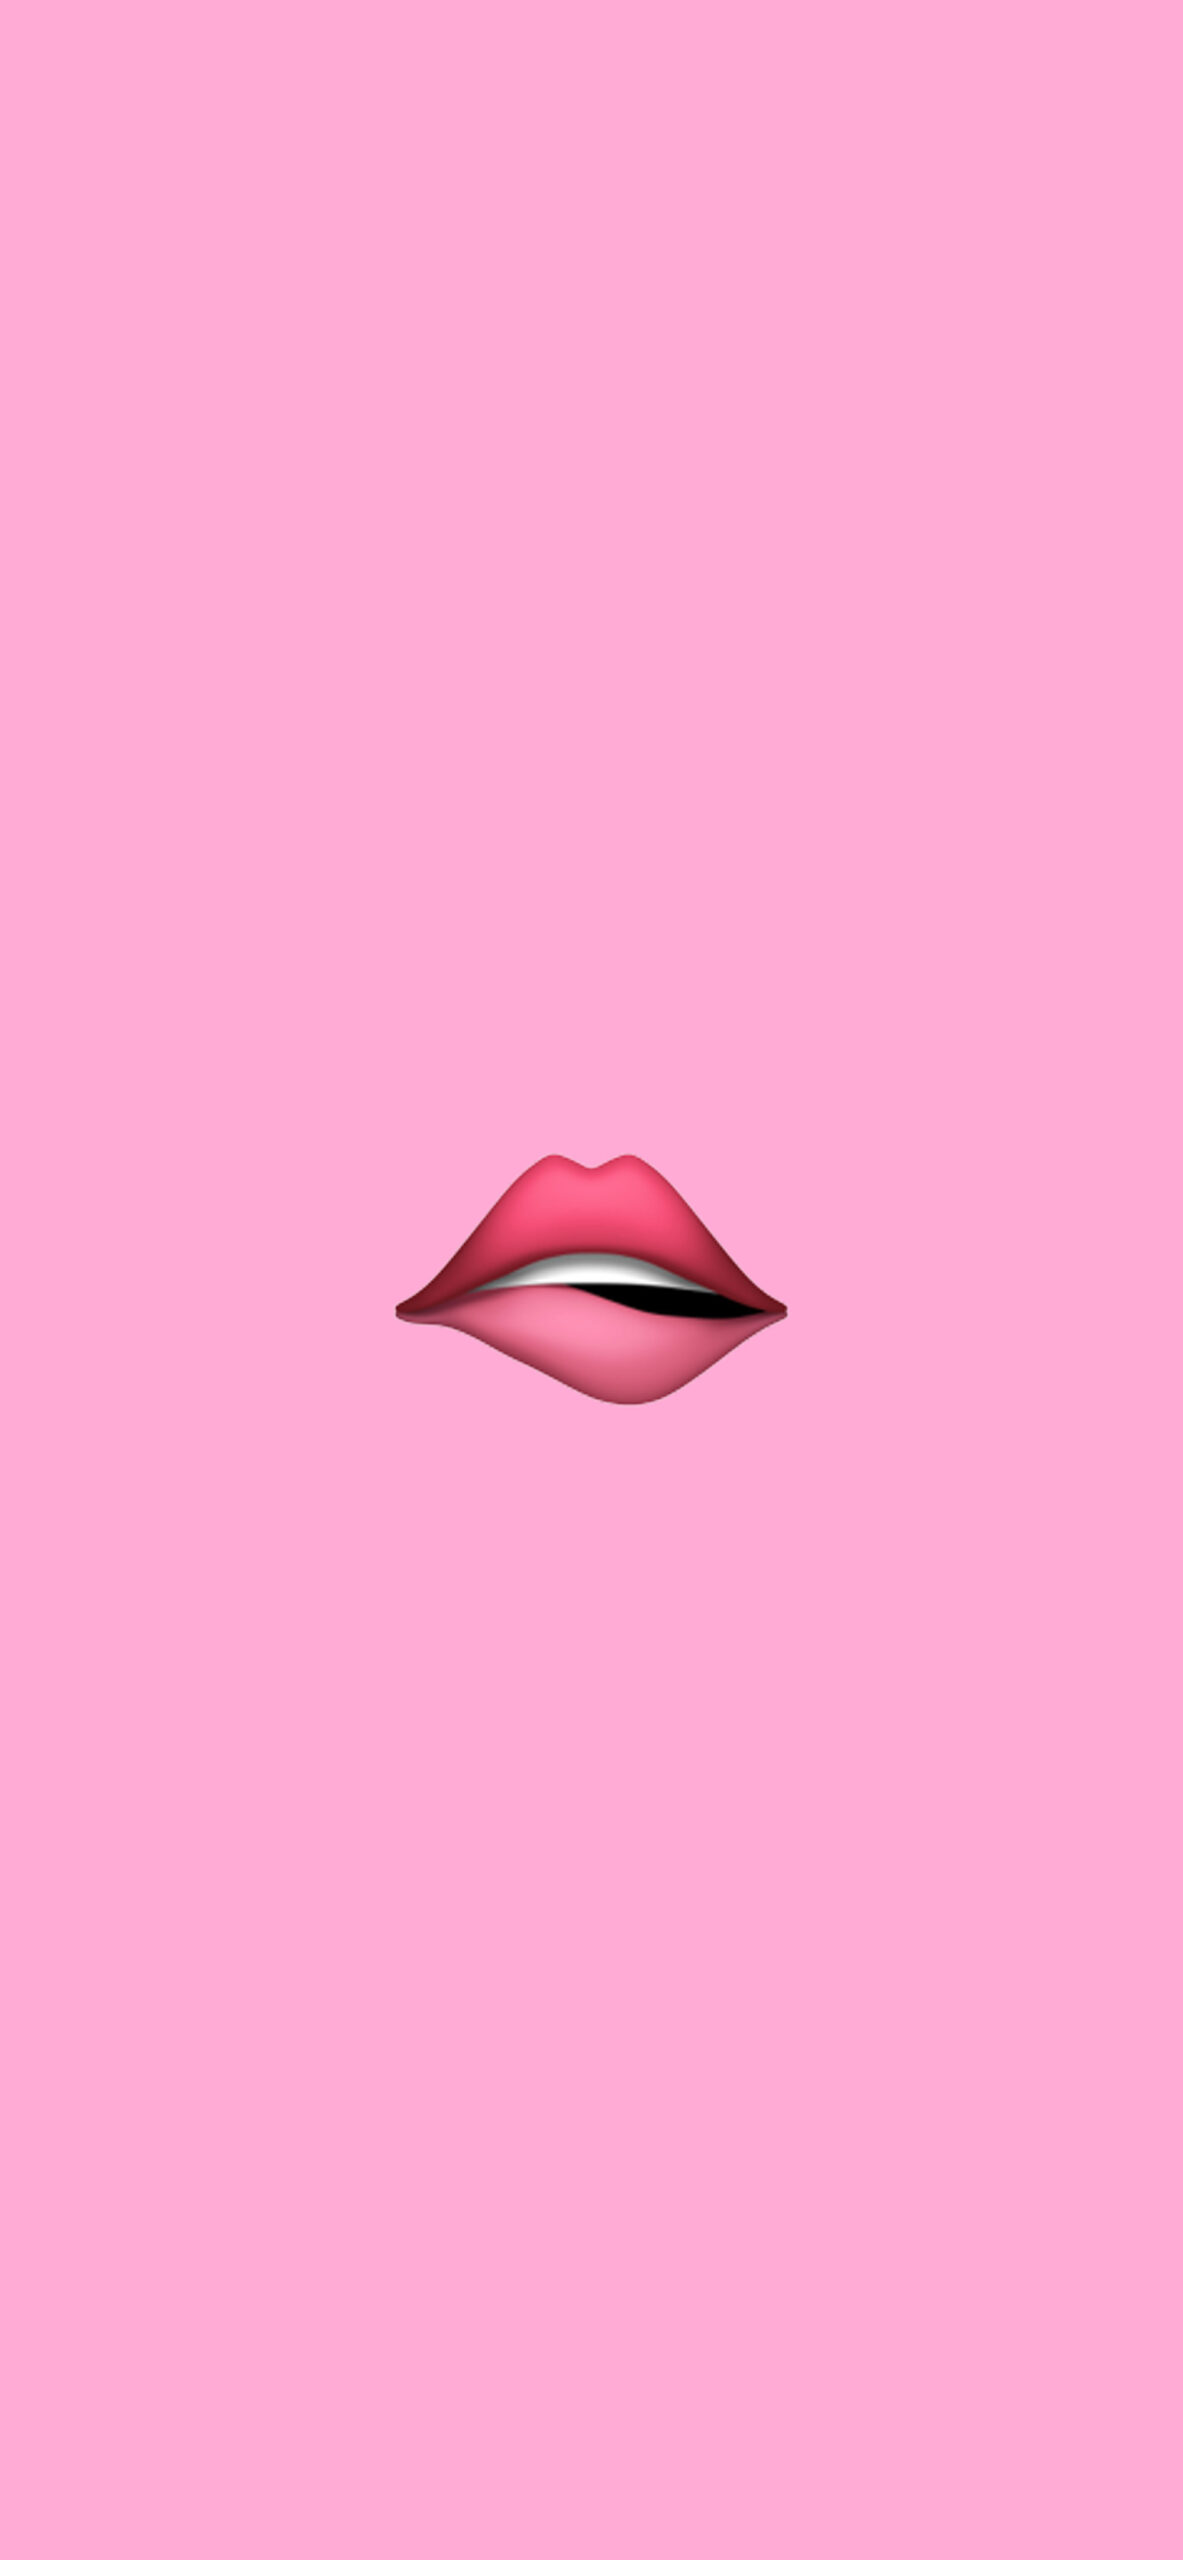 biting lip polish emoji aesthetic wallpaper